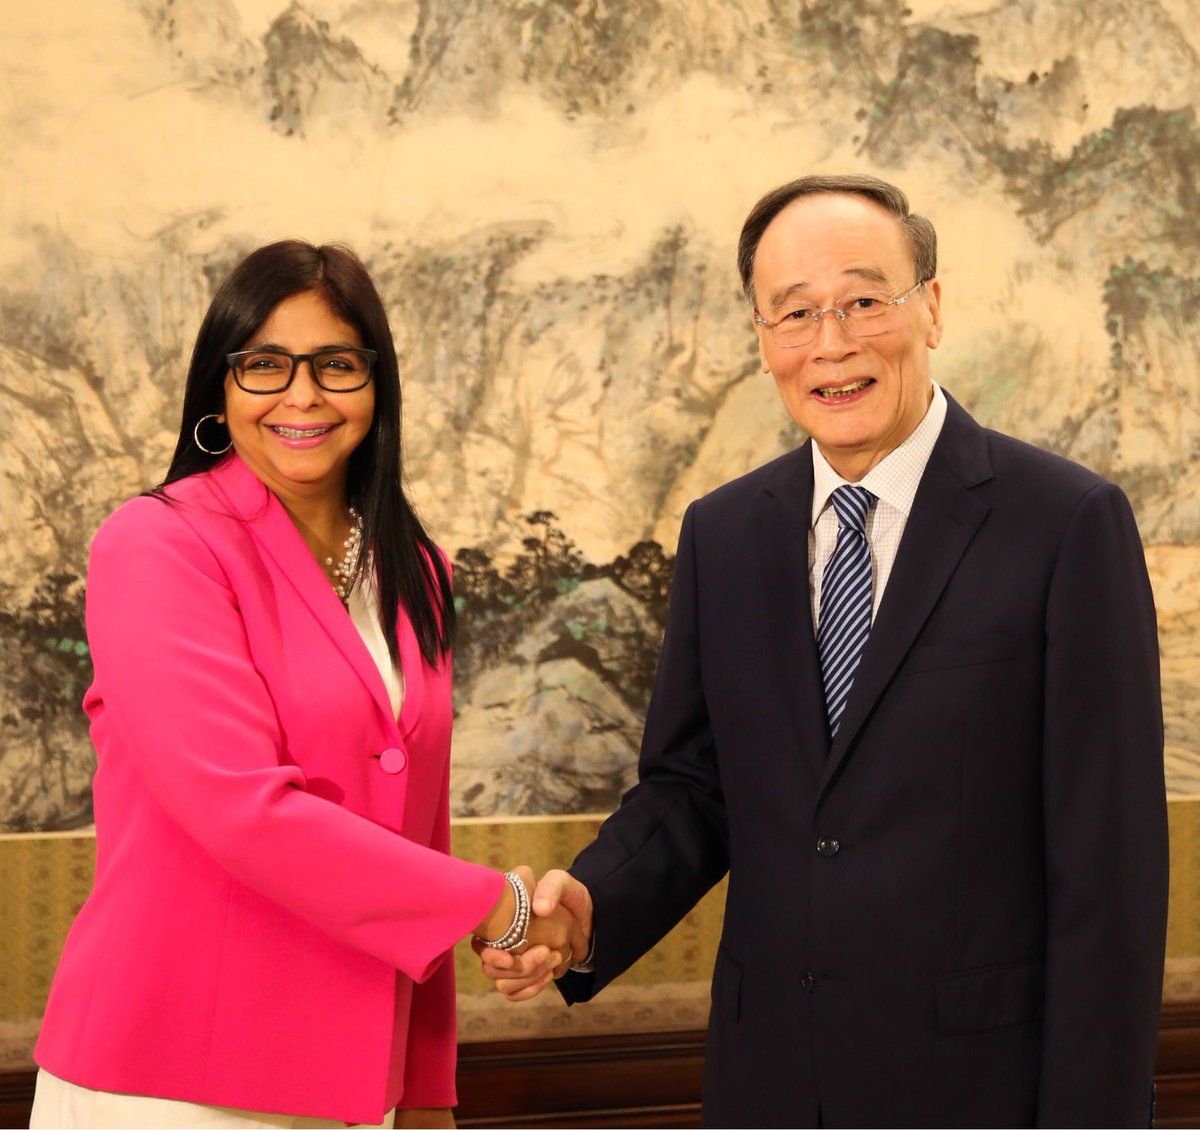 La vicepresidenta Rodríguez llegó este lunes a China para cumplir importantes compromisos con autoridades políticas y financieras de esa nación.